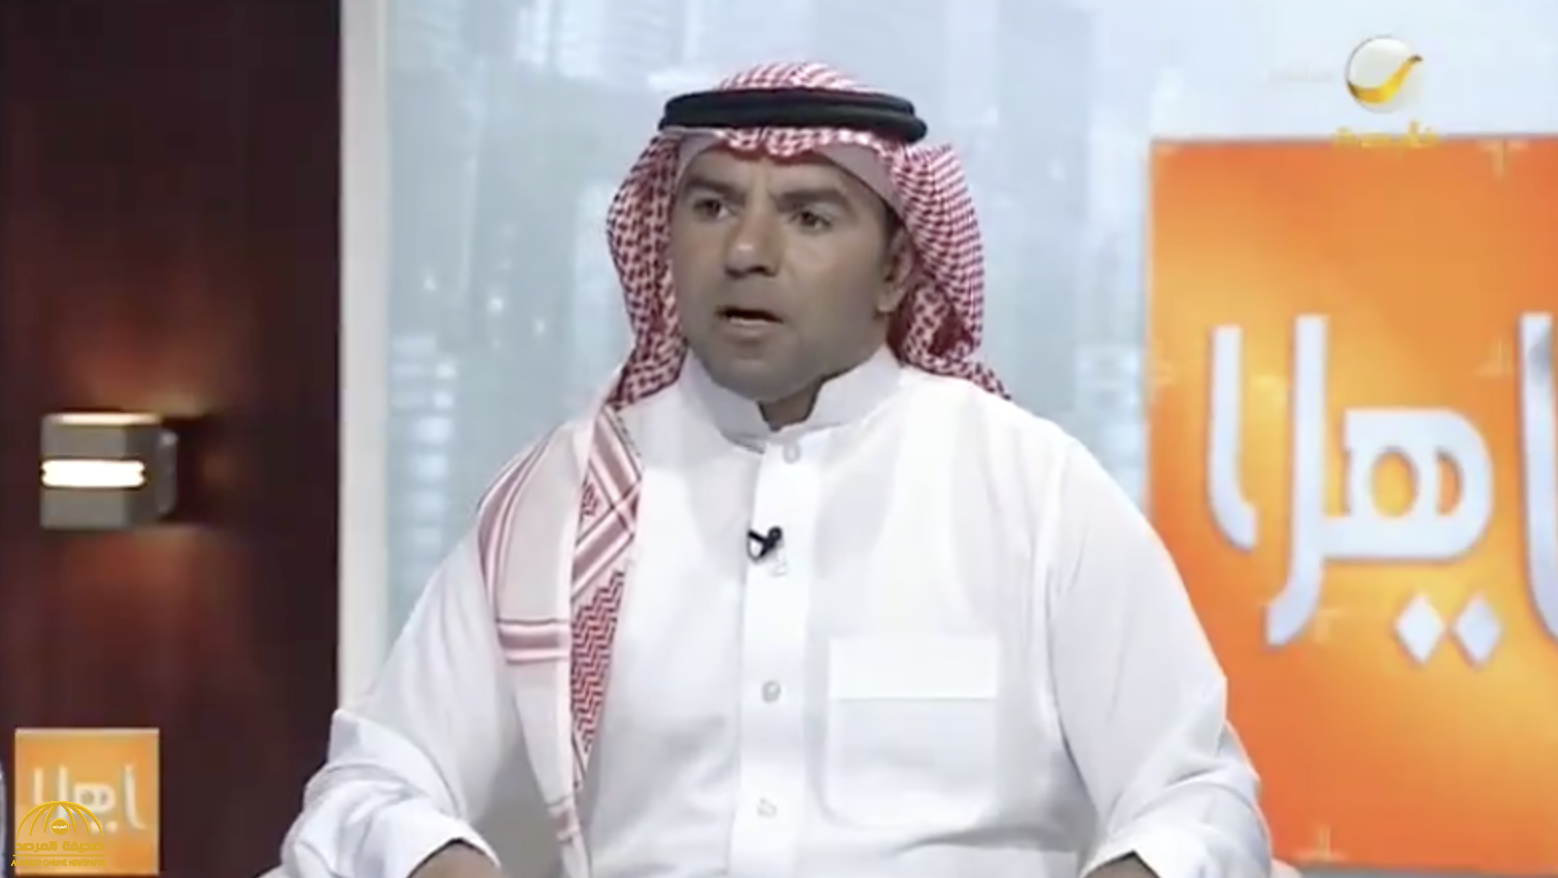 بالفيديو: قصة حياة أبو الفدا مشهور سناب وسبب طرده من شركة وعودته لبيع العصير في الشارع